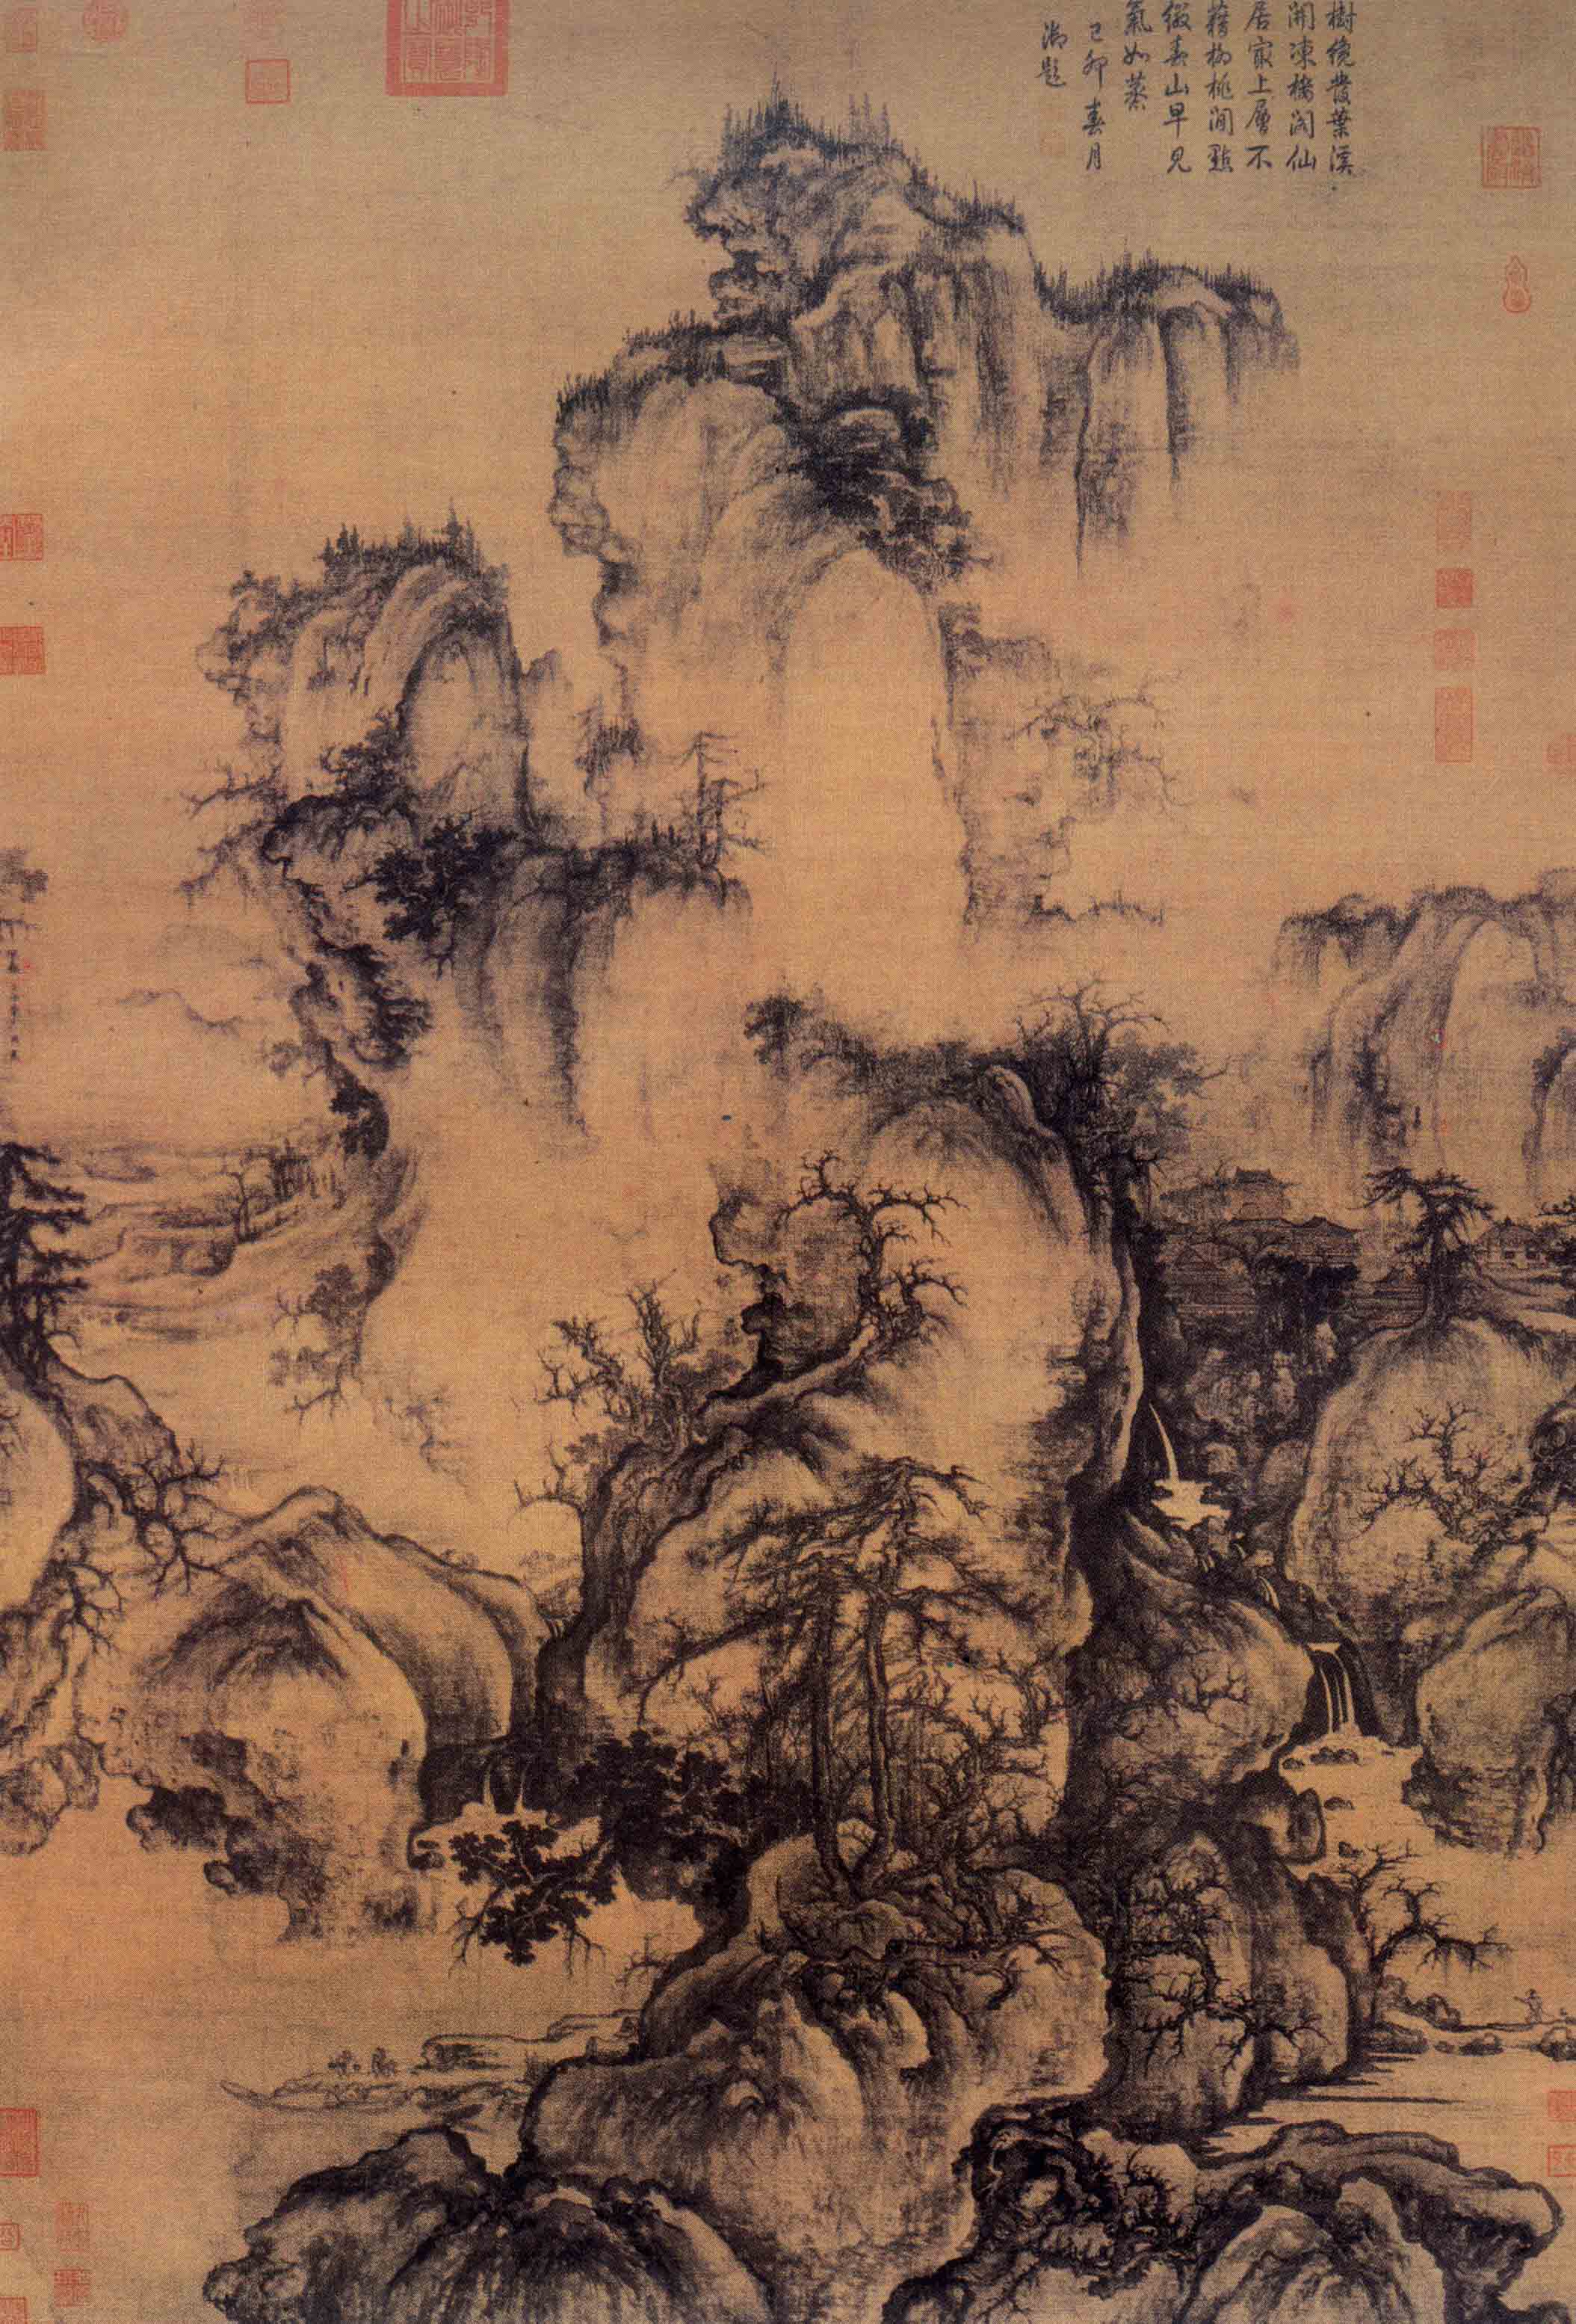 国画(中国传统绘画形式)